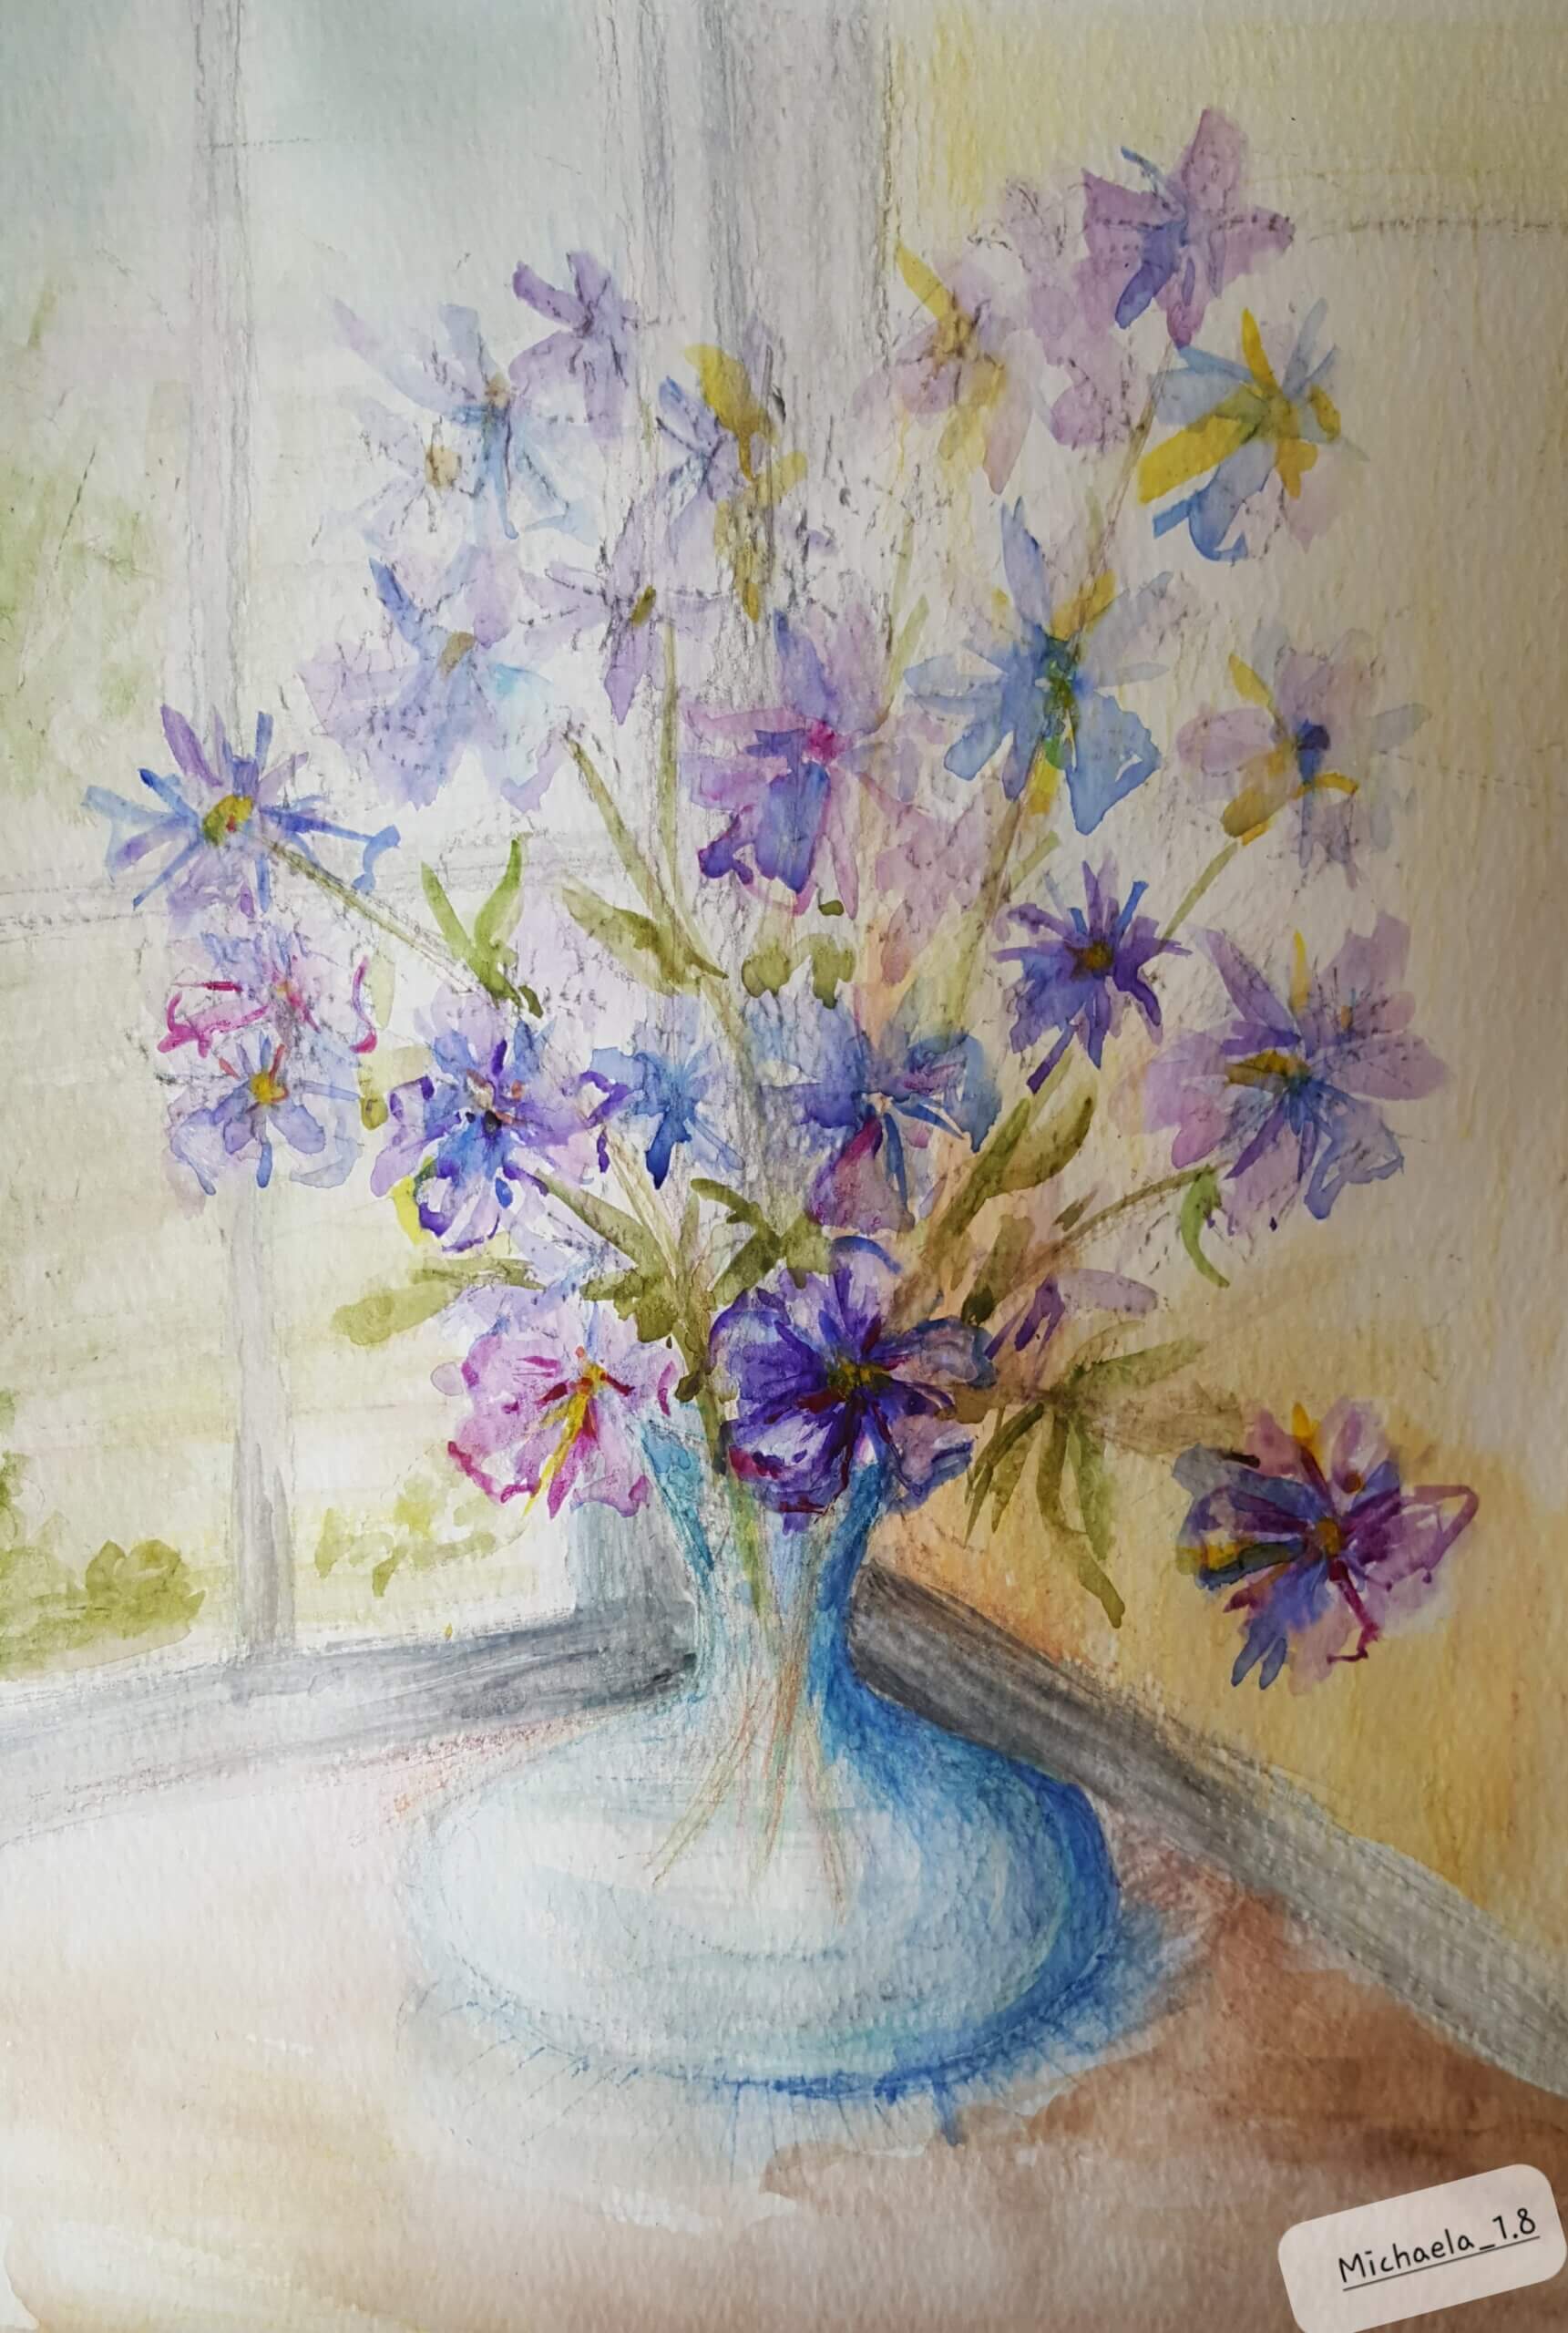 Purple flowers in a blue glass vase